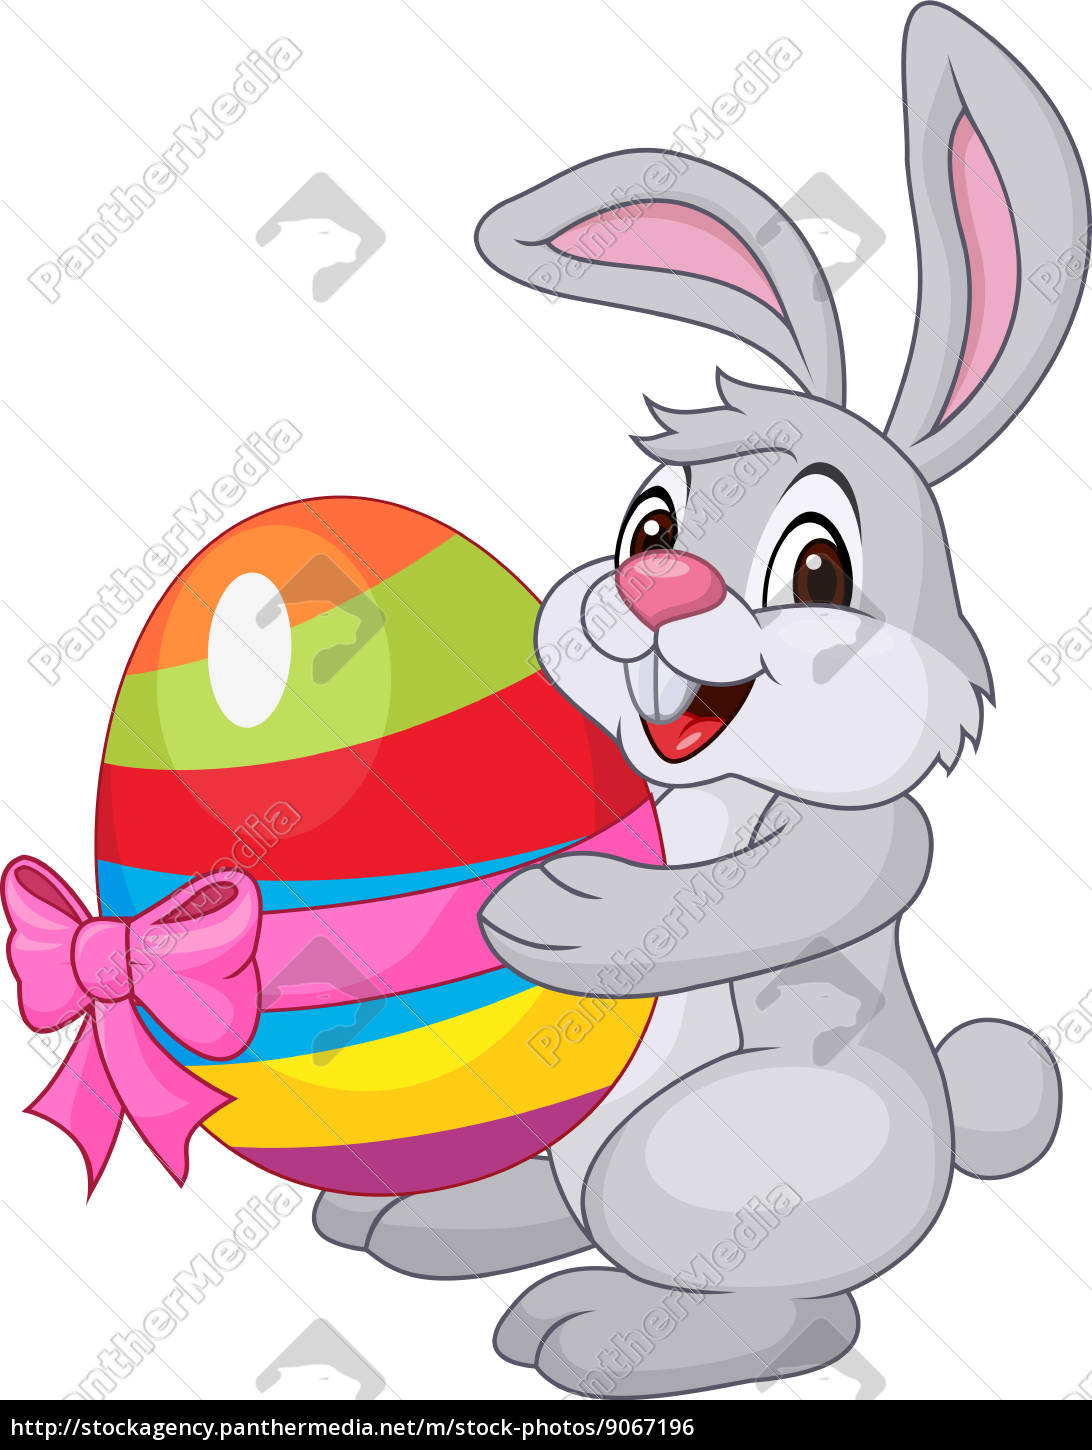 Ostern Aufkleber Cartoon Osterei Kaninchen Aufkleber für Zuhause 1 Rolle